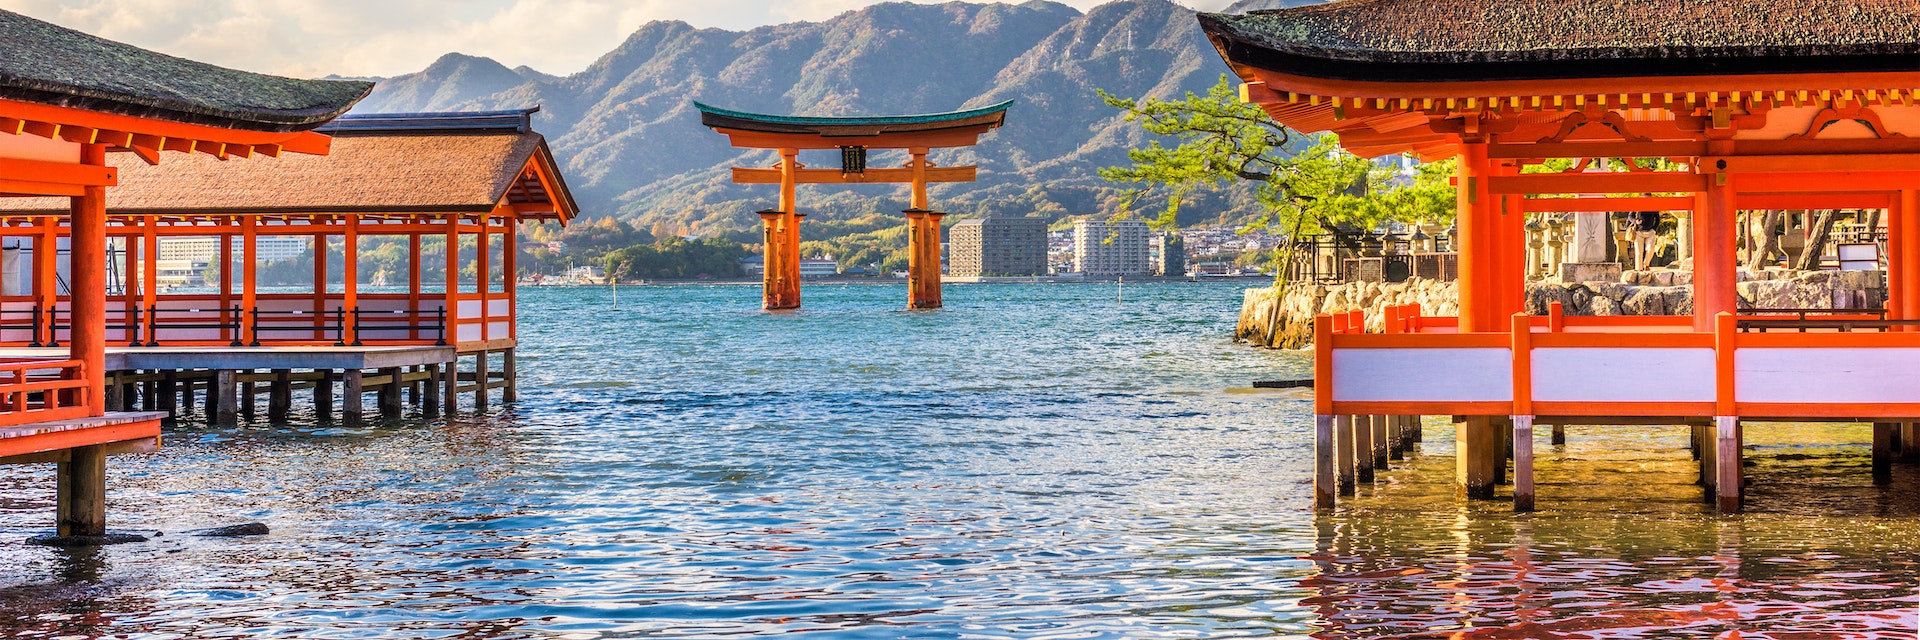 Miyajima, Hiroshima, Japanese floating shrine.